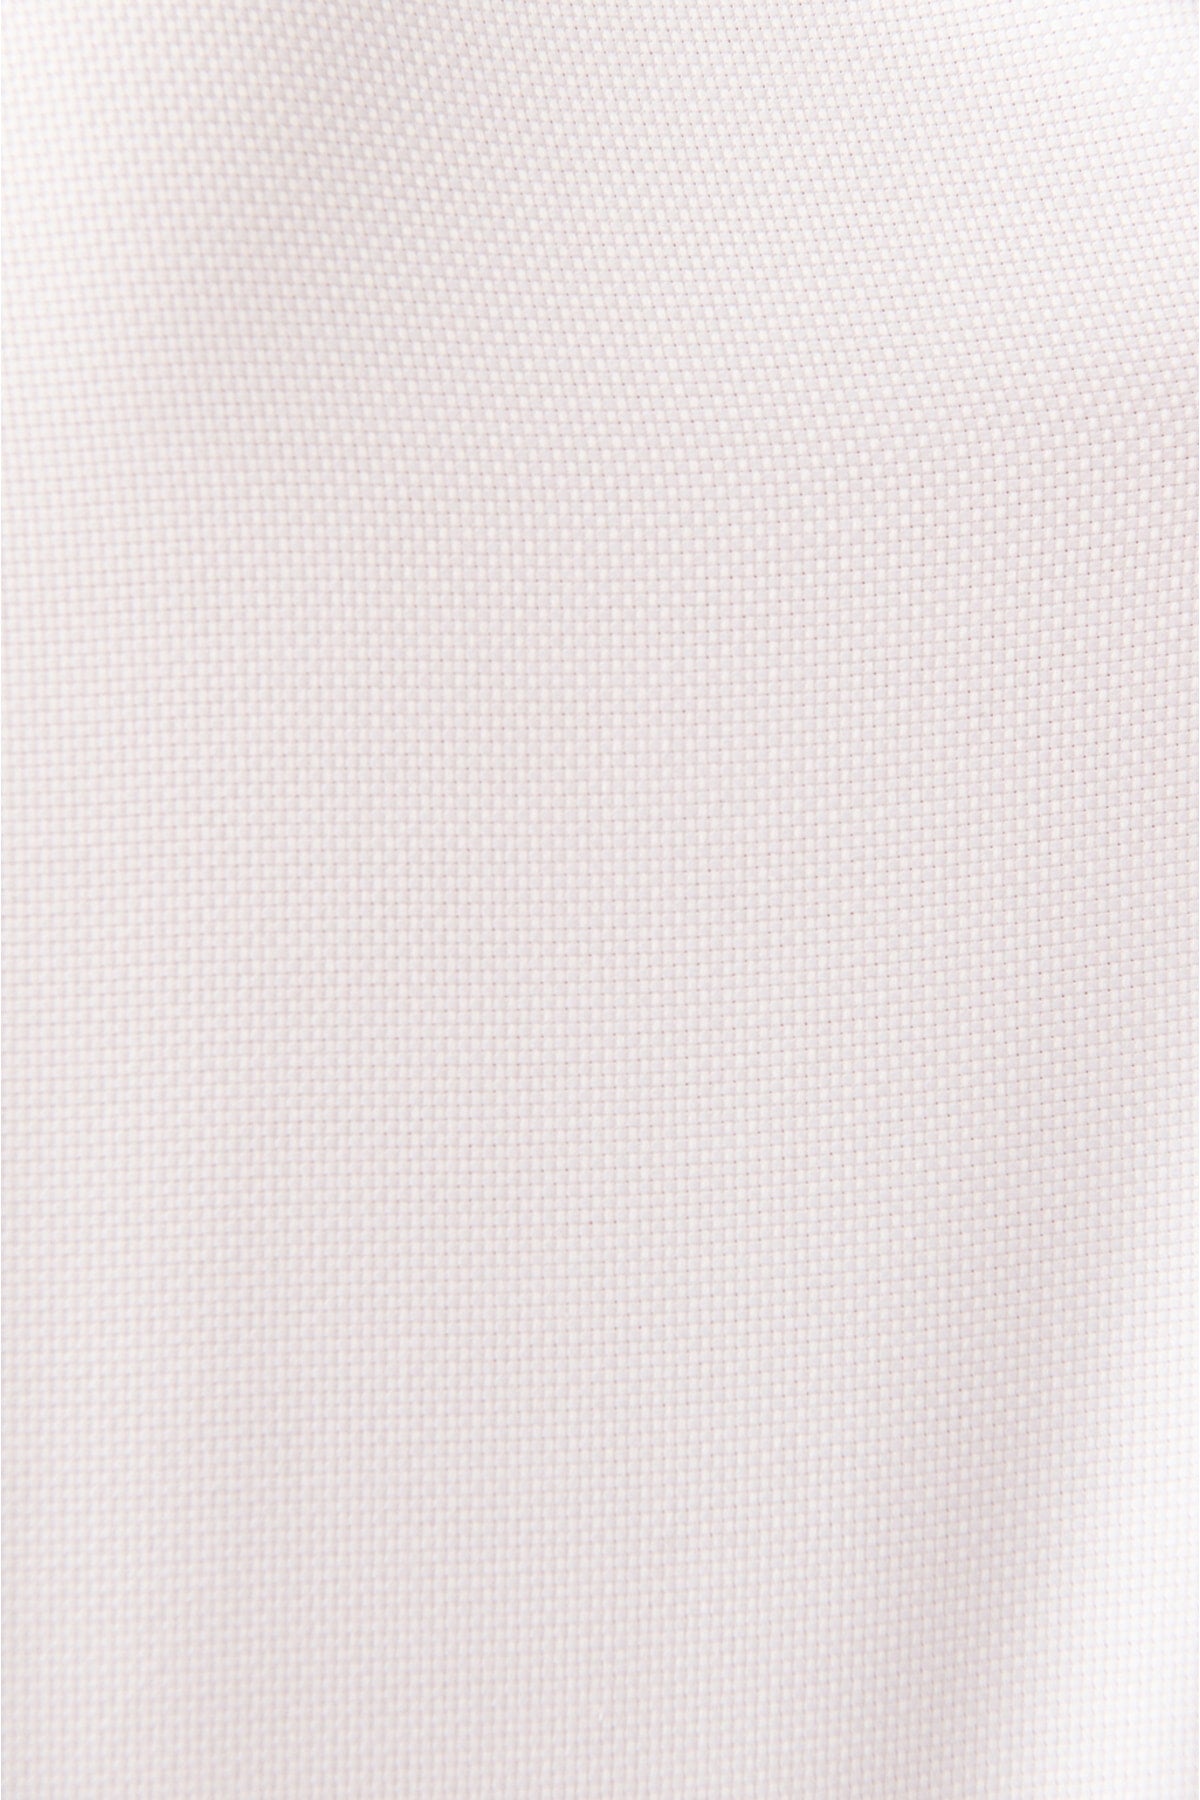 Men's White Amelor 100 %Cotton Slim Fit Shirt A31y2003